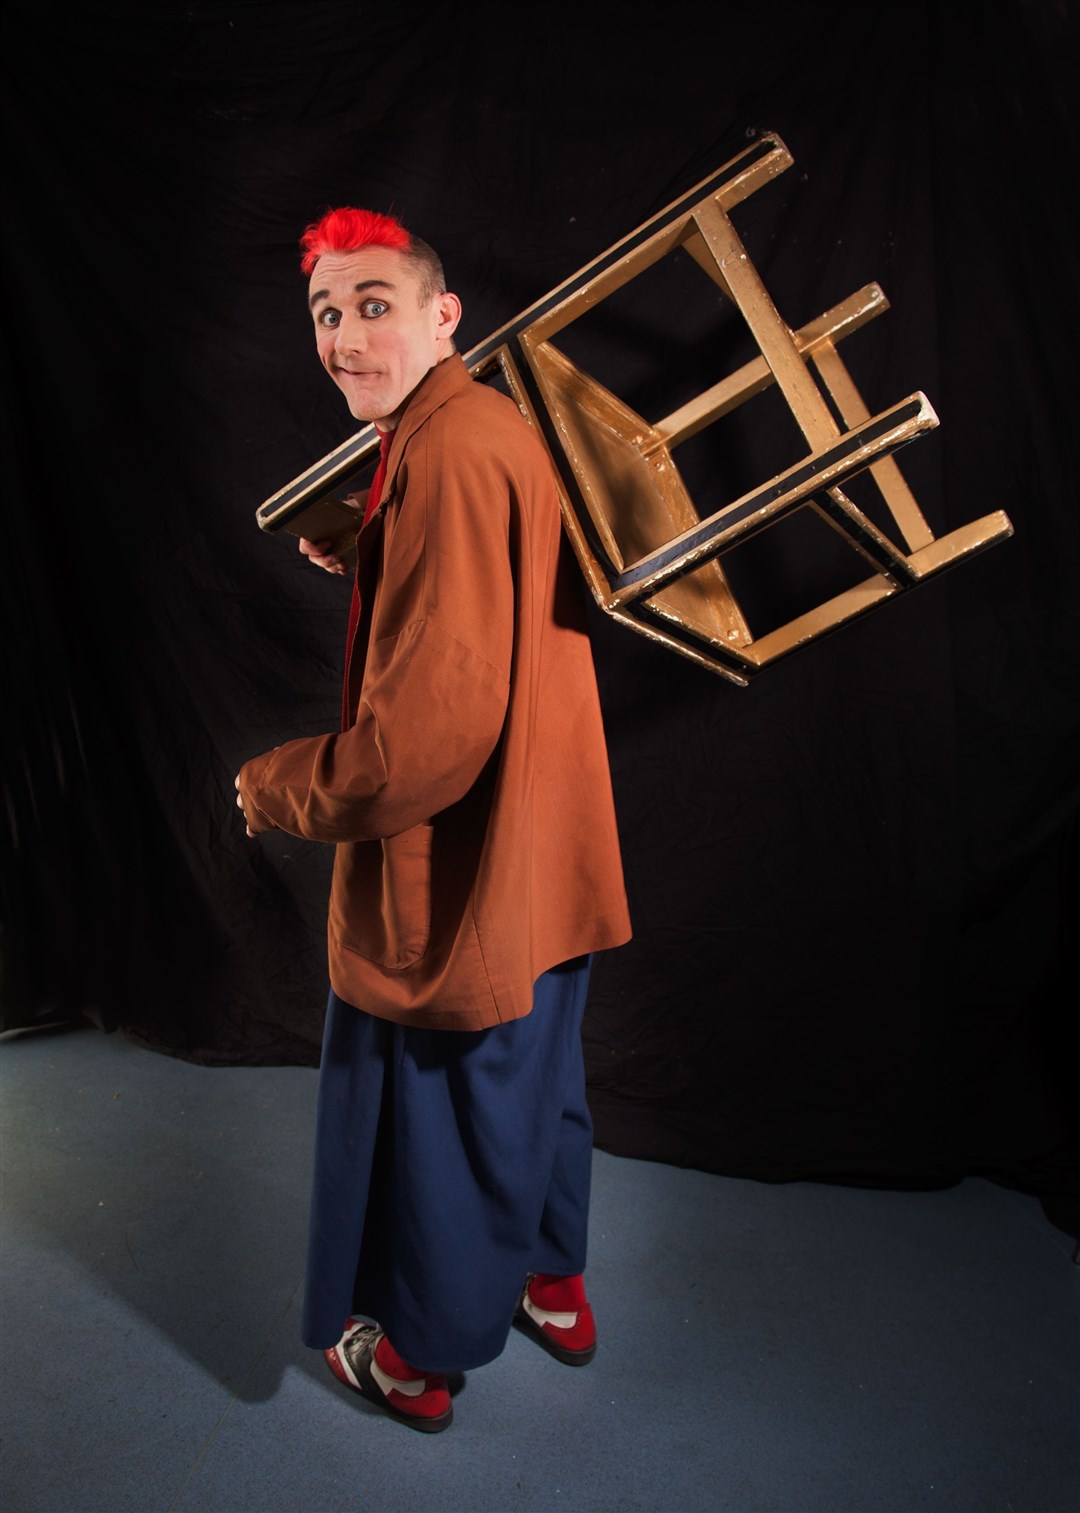 Tweedy the clown with Cirque Berserk (Paul Reid/PA)